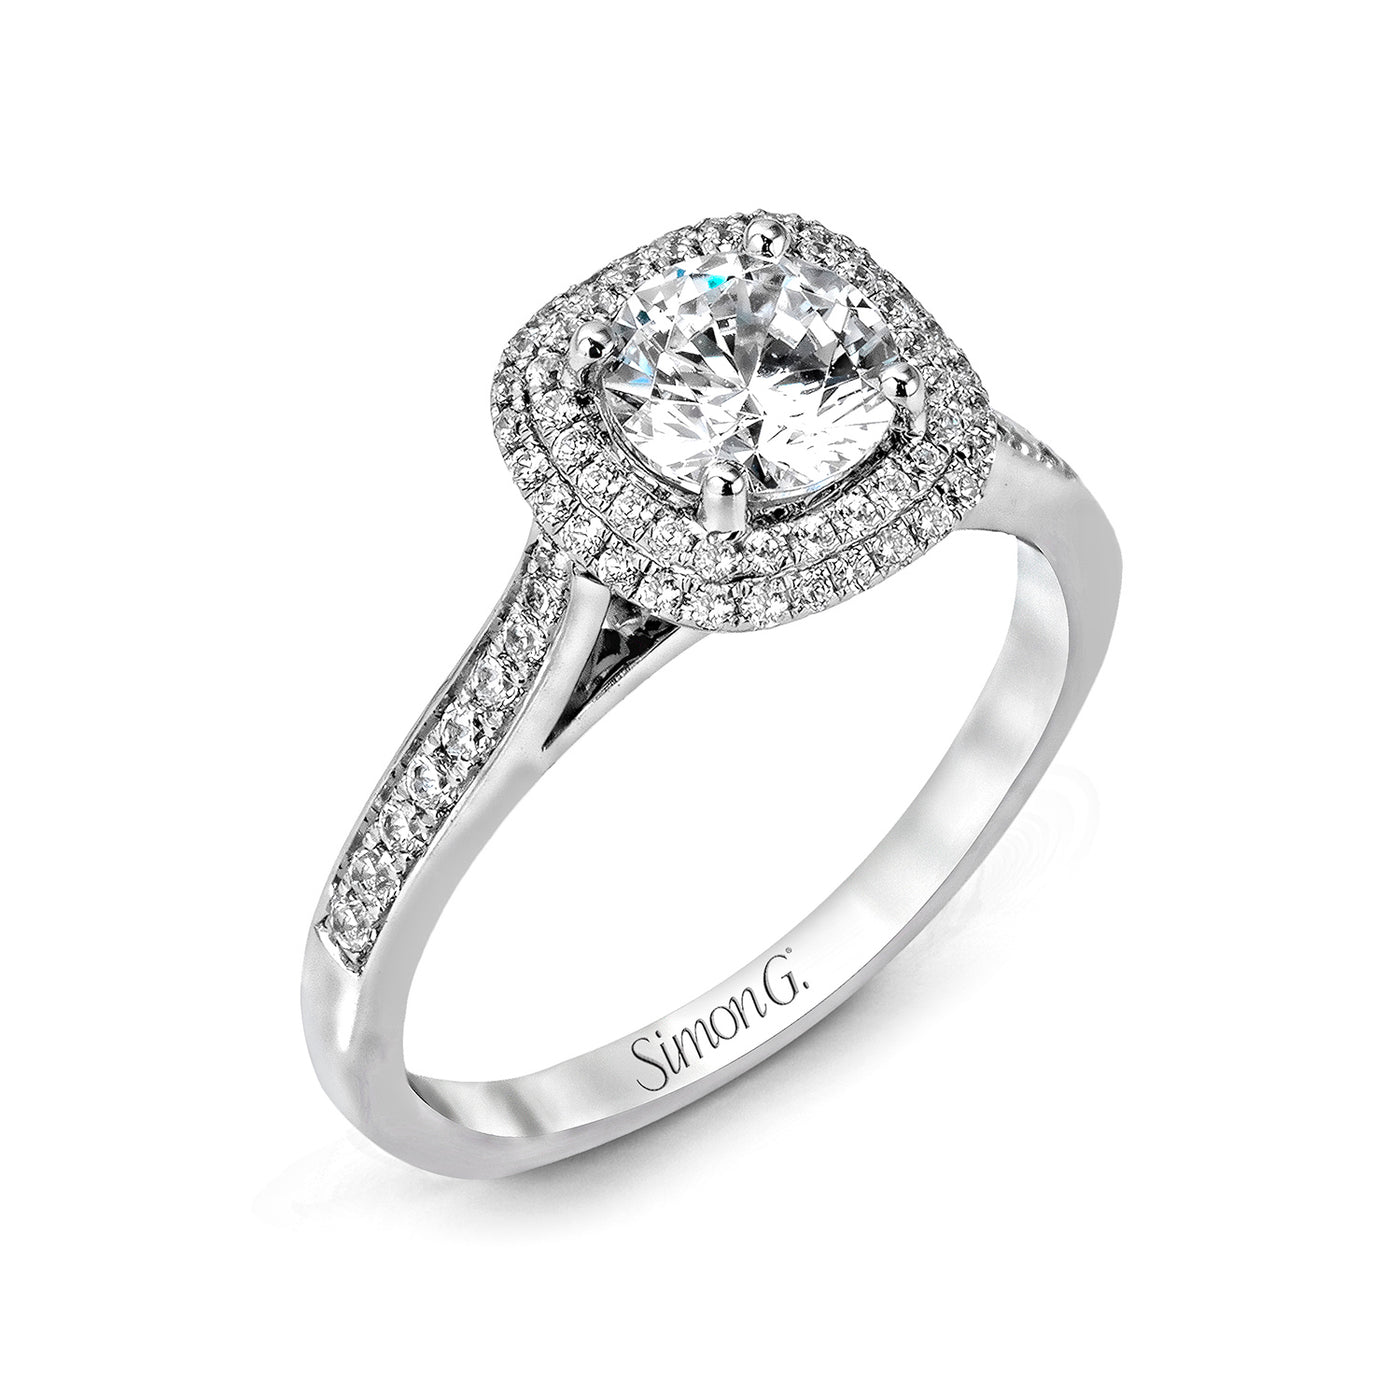 Simon G 18k White Gold Round Halo Diamond Semi-Mount Engagement Ring – MR2395